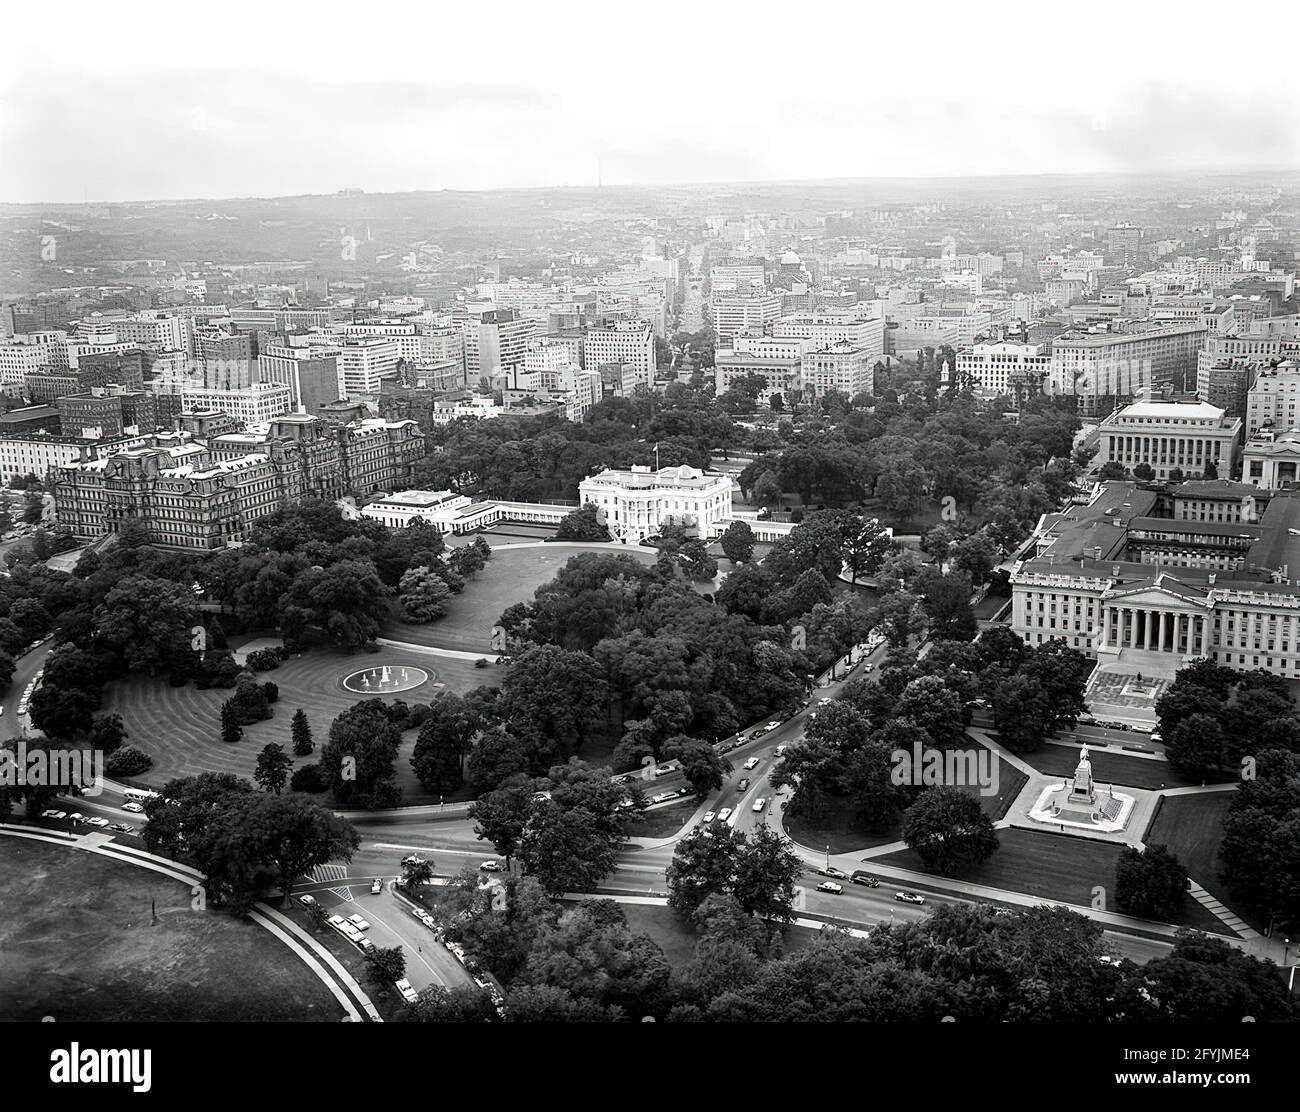 Photo aérienne de Washington, D.C., du front nord et du sud arrière de la Maison Blanche prise de Lafayette Park dans le parc du Président. La photo comprend également l'Ellipse, le Washington Monument, le Jefferson Memorial, le Executive Office Building et le département du Trésor des États-Unis. Banque D'Images